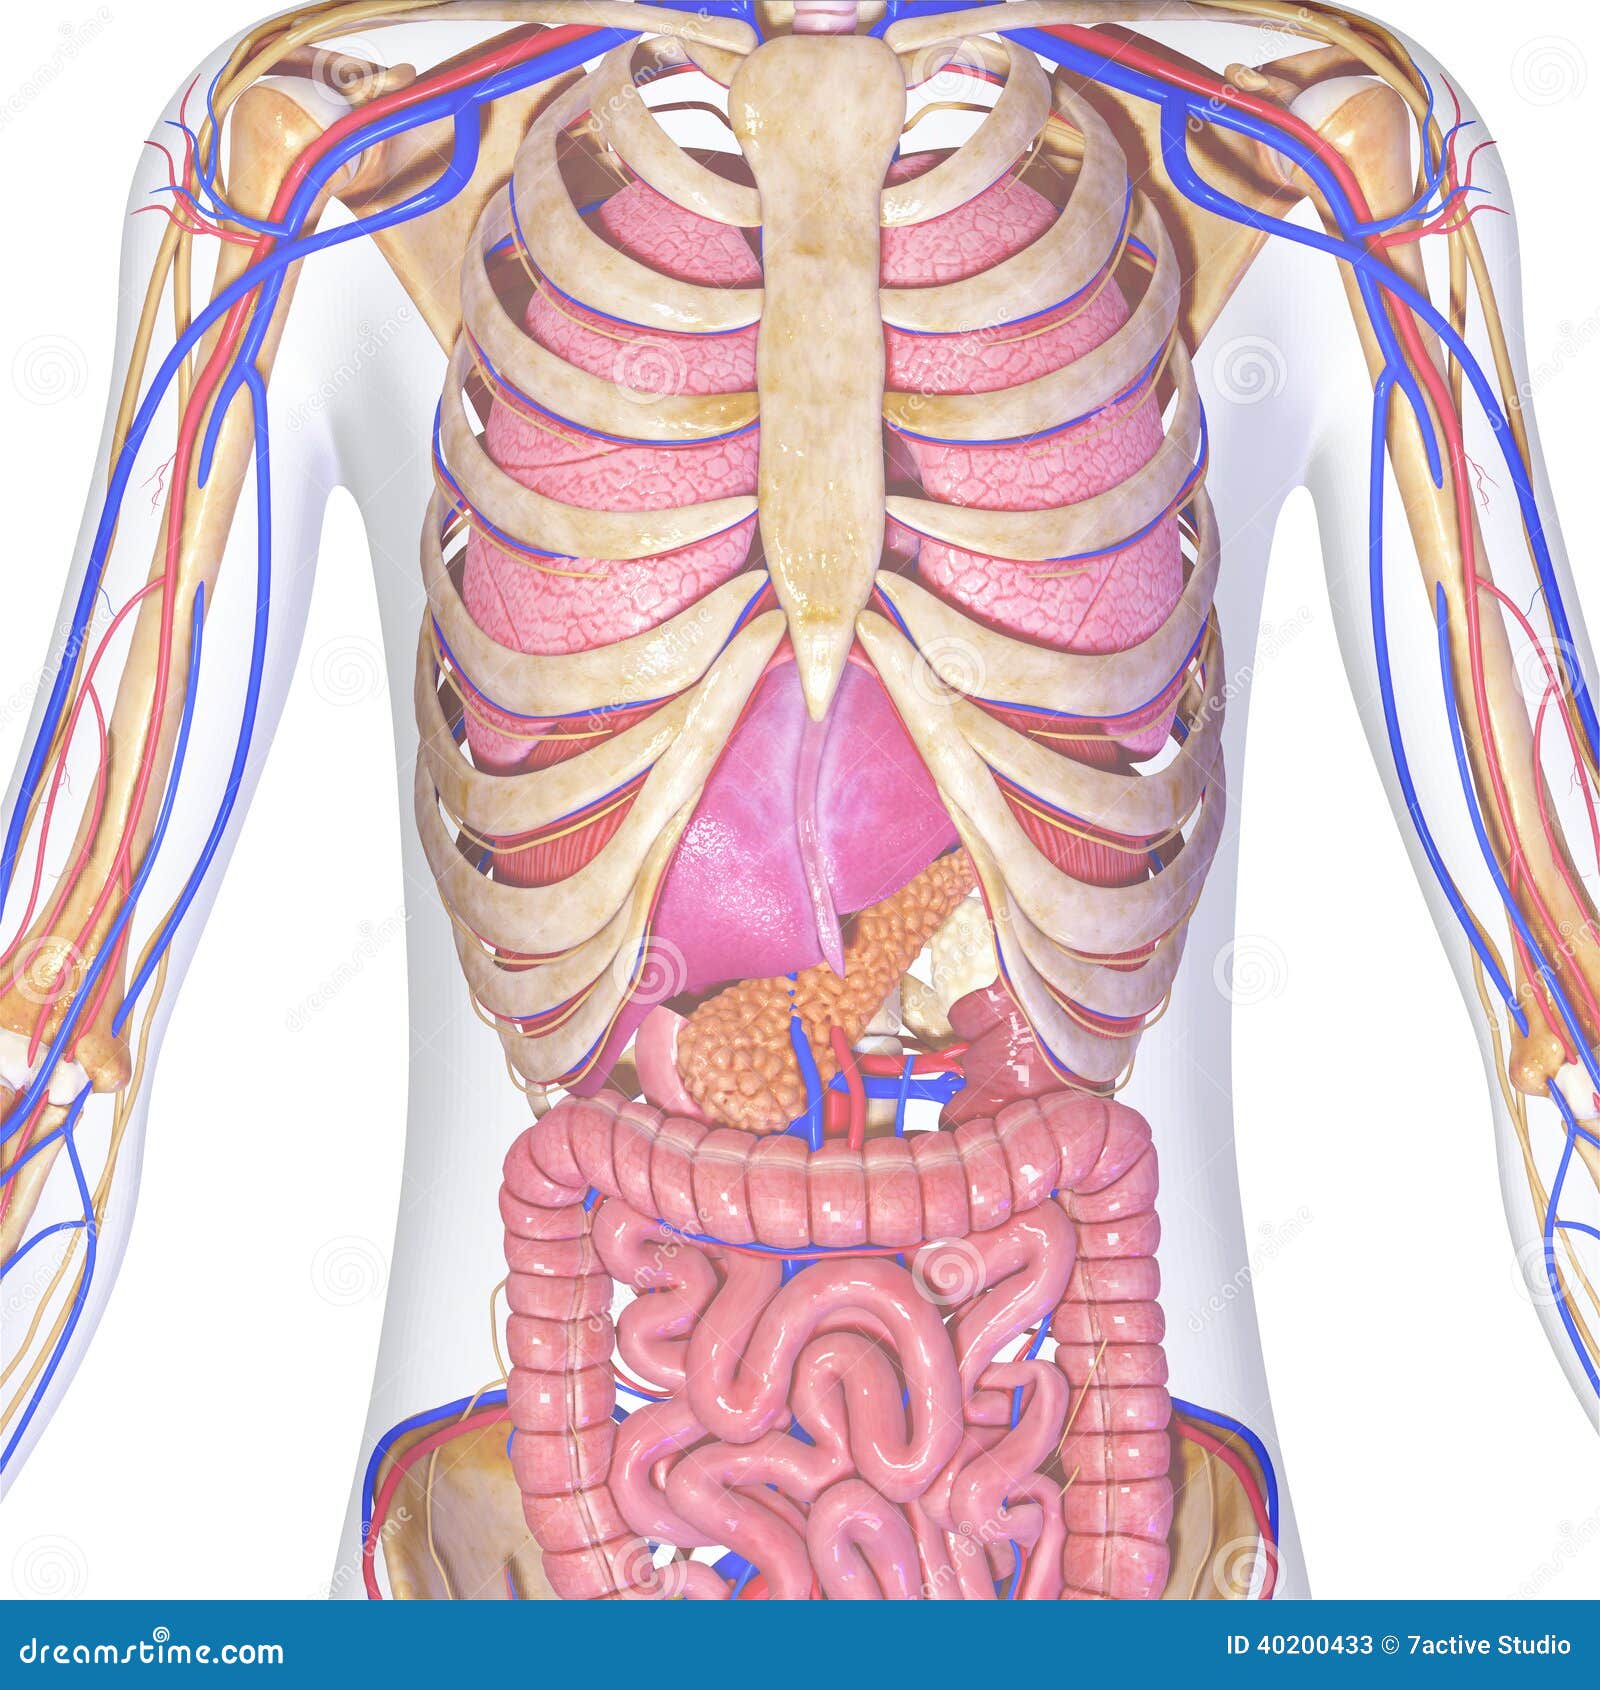 Skeleton with organs stock illustration. Illustration of render - 40200433